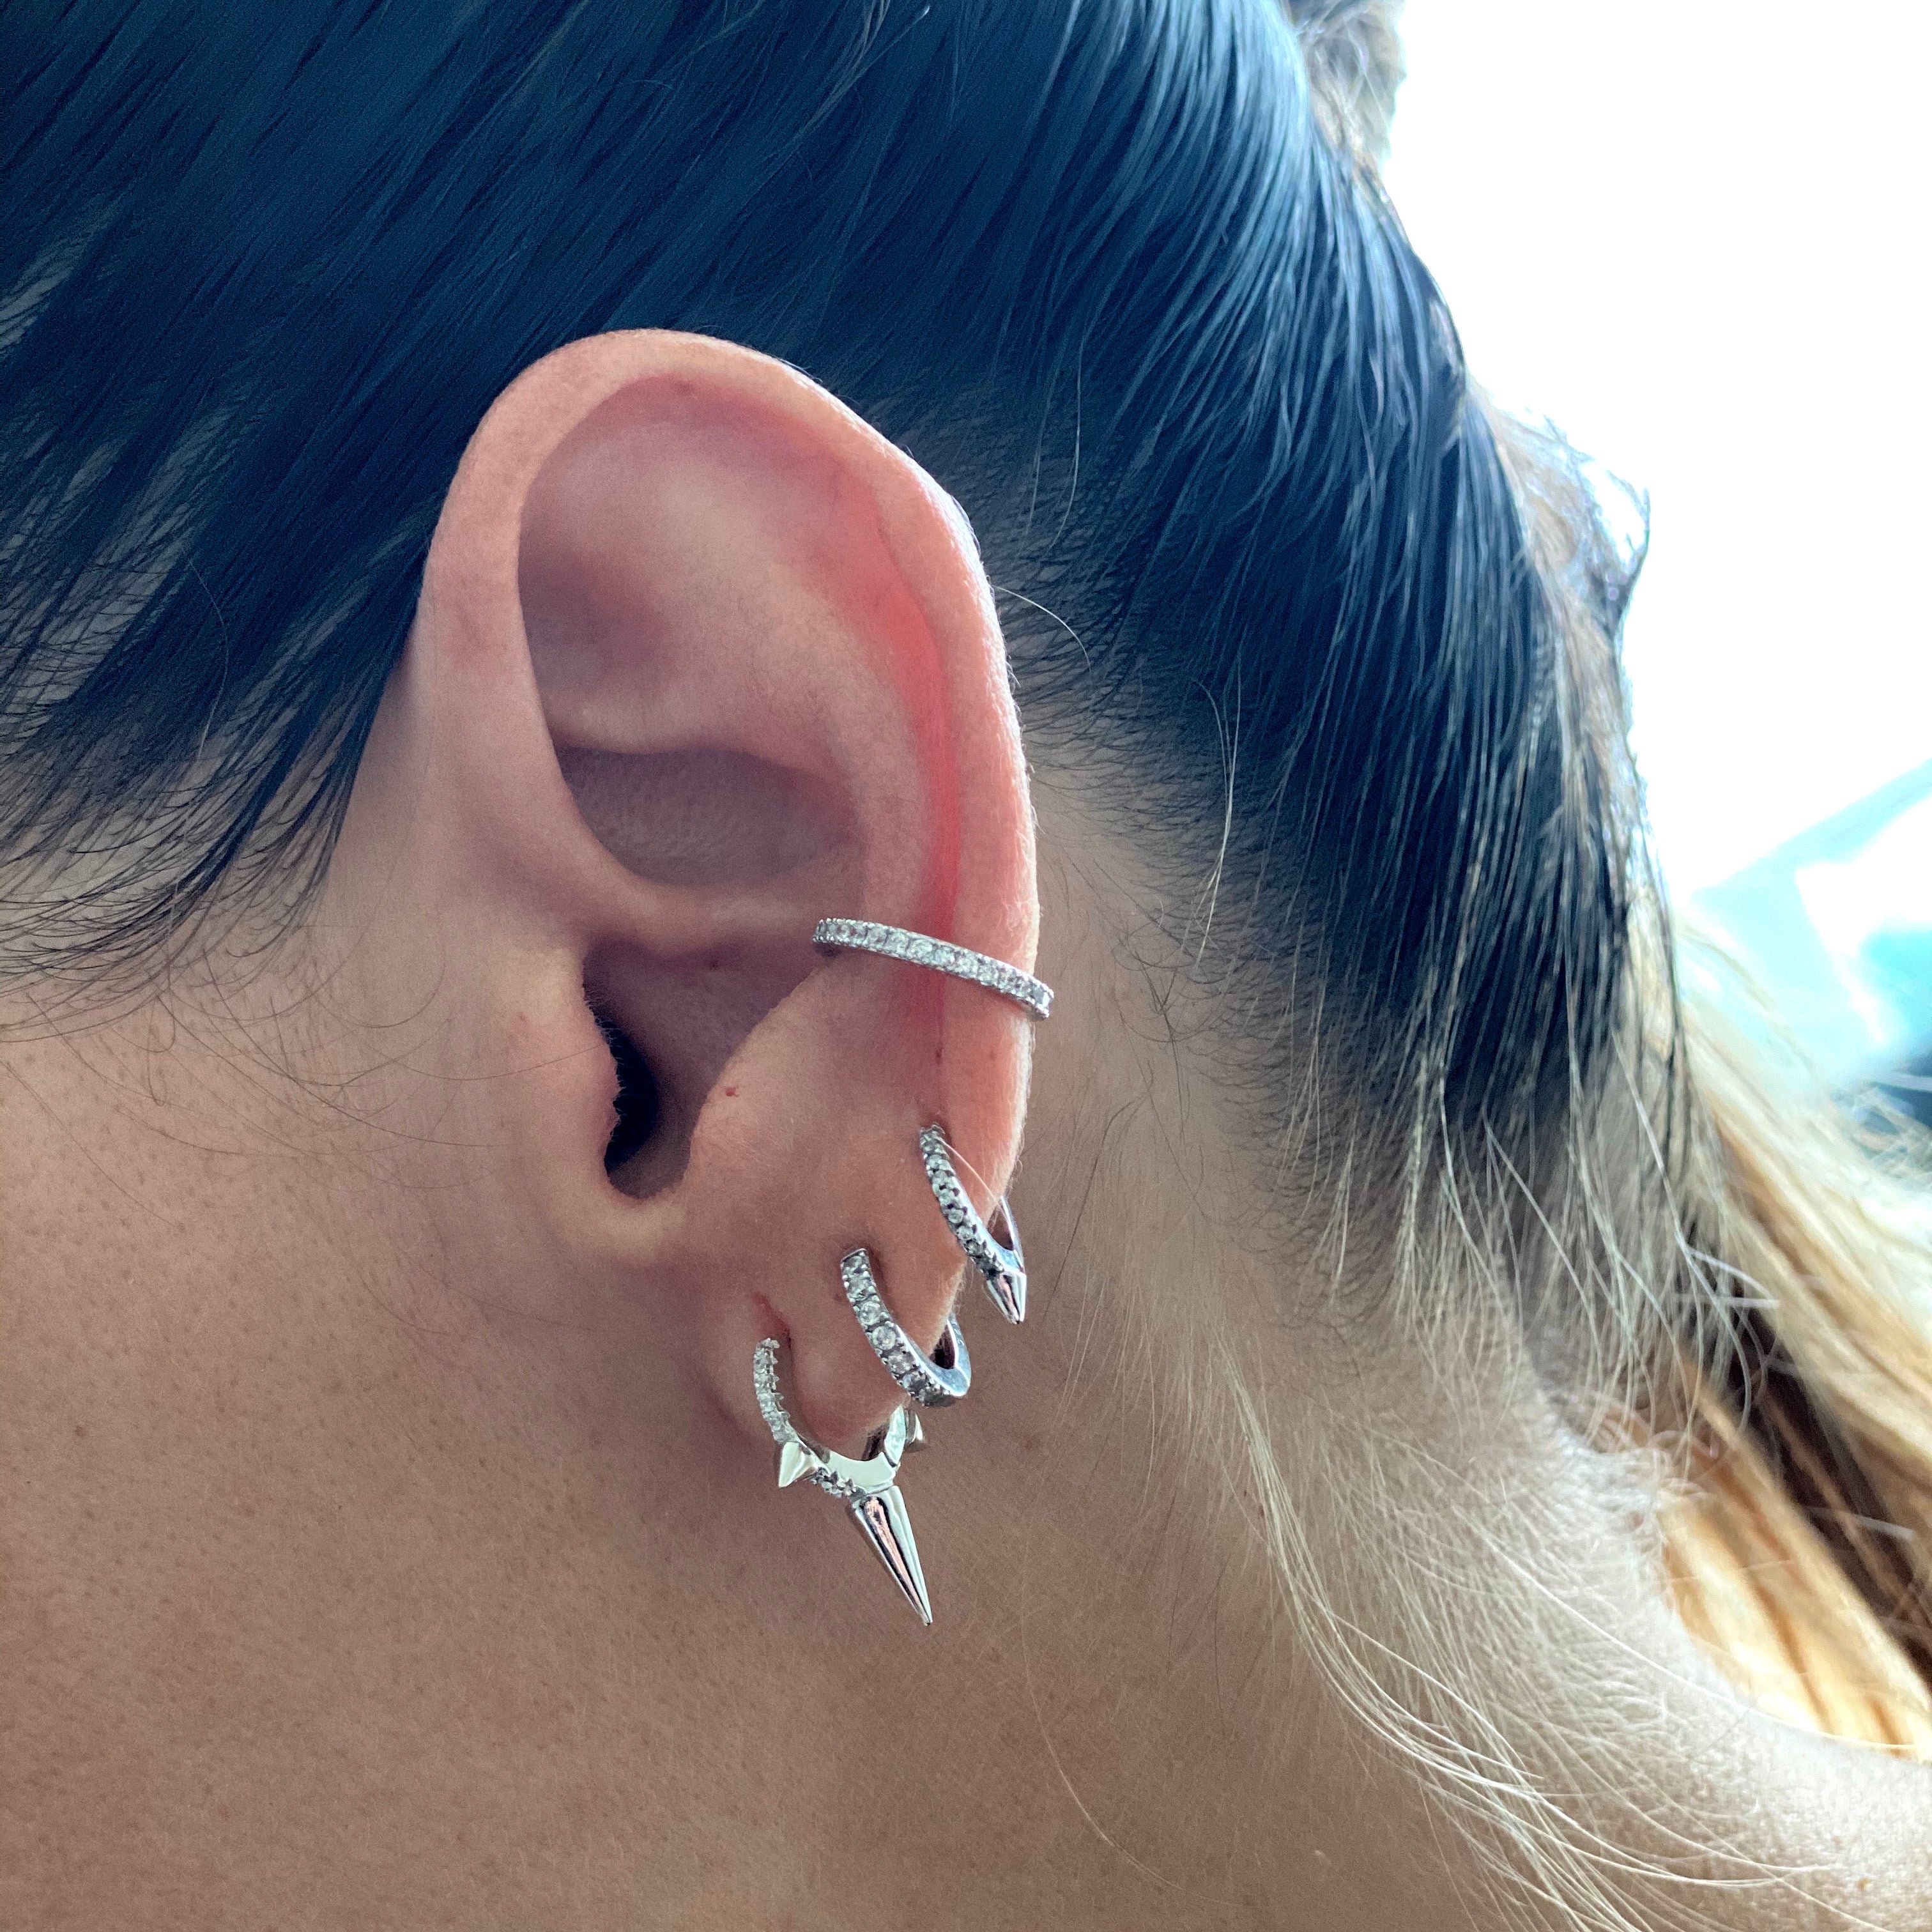 Shop women's and men's fashion | Ear piercing studs, Double ear piercings,  Earings piercings